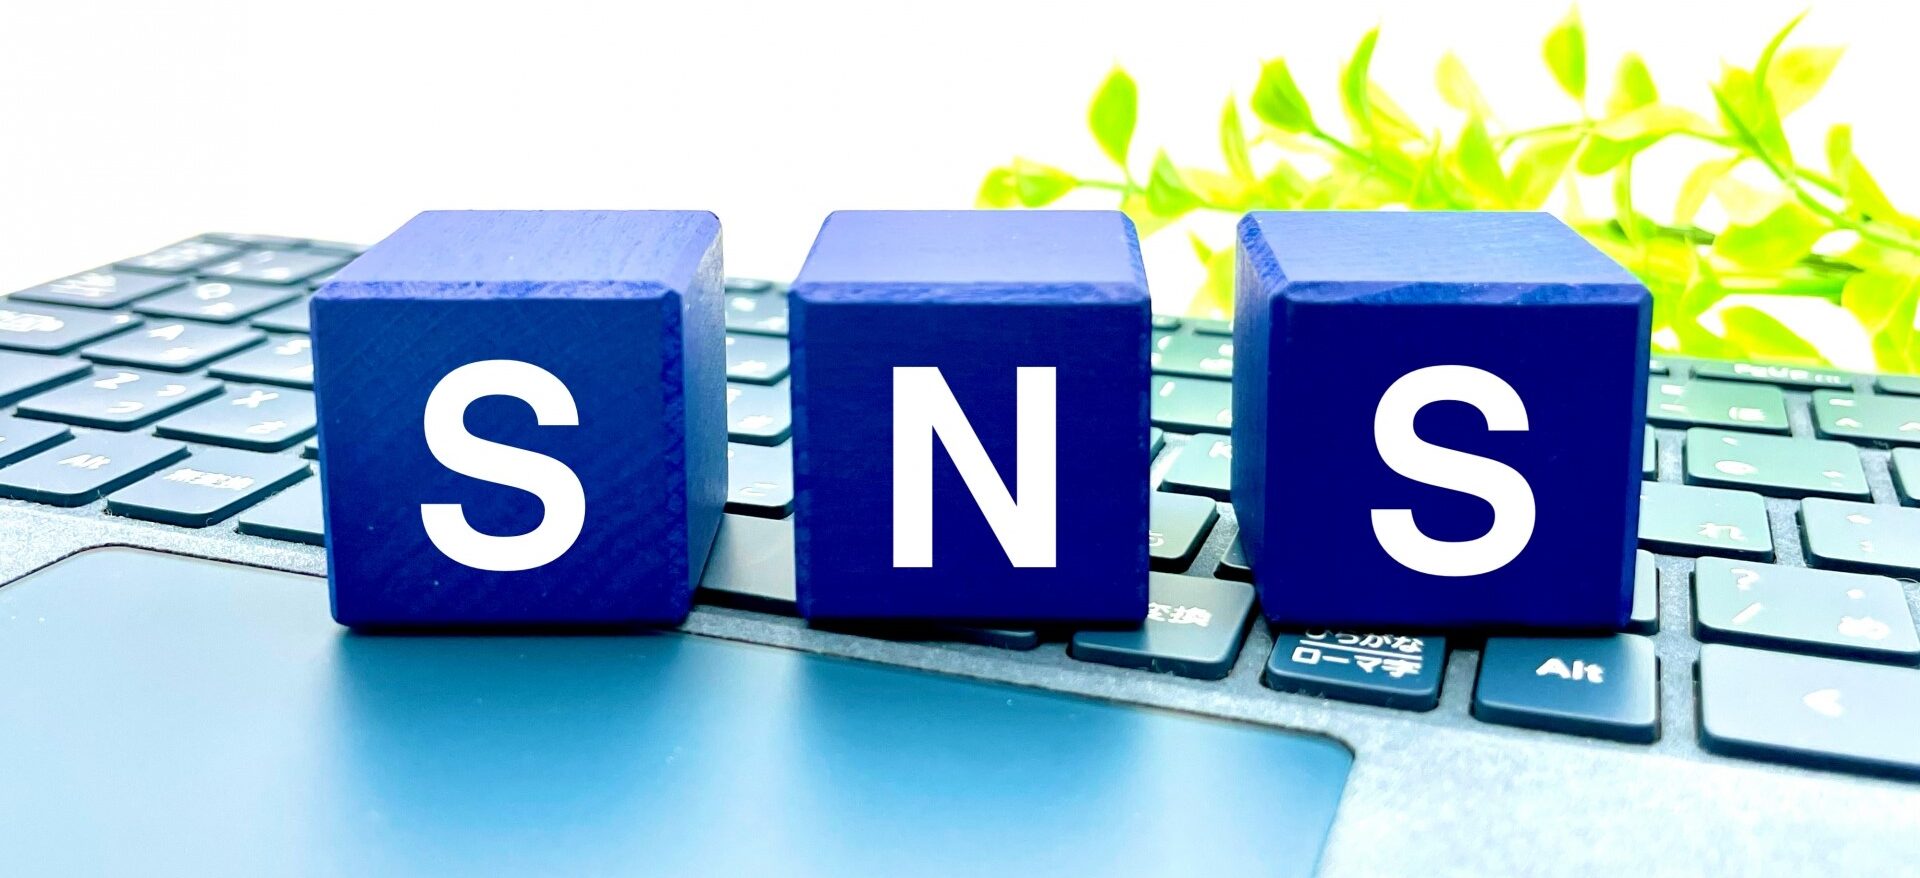 SNSをビジネス活用するための本質的な運用方法